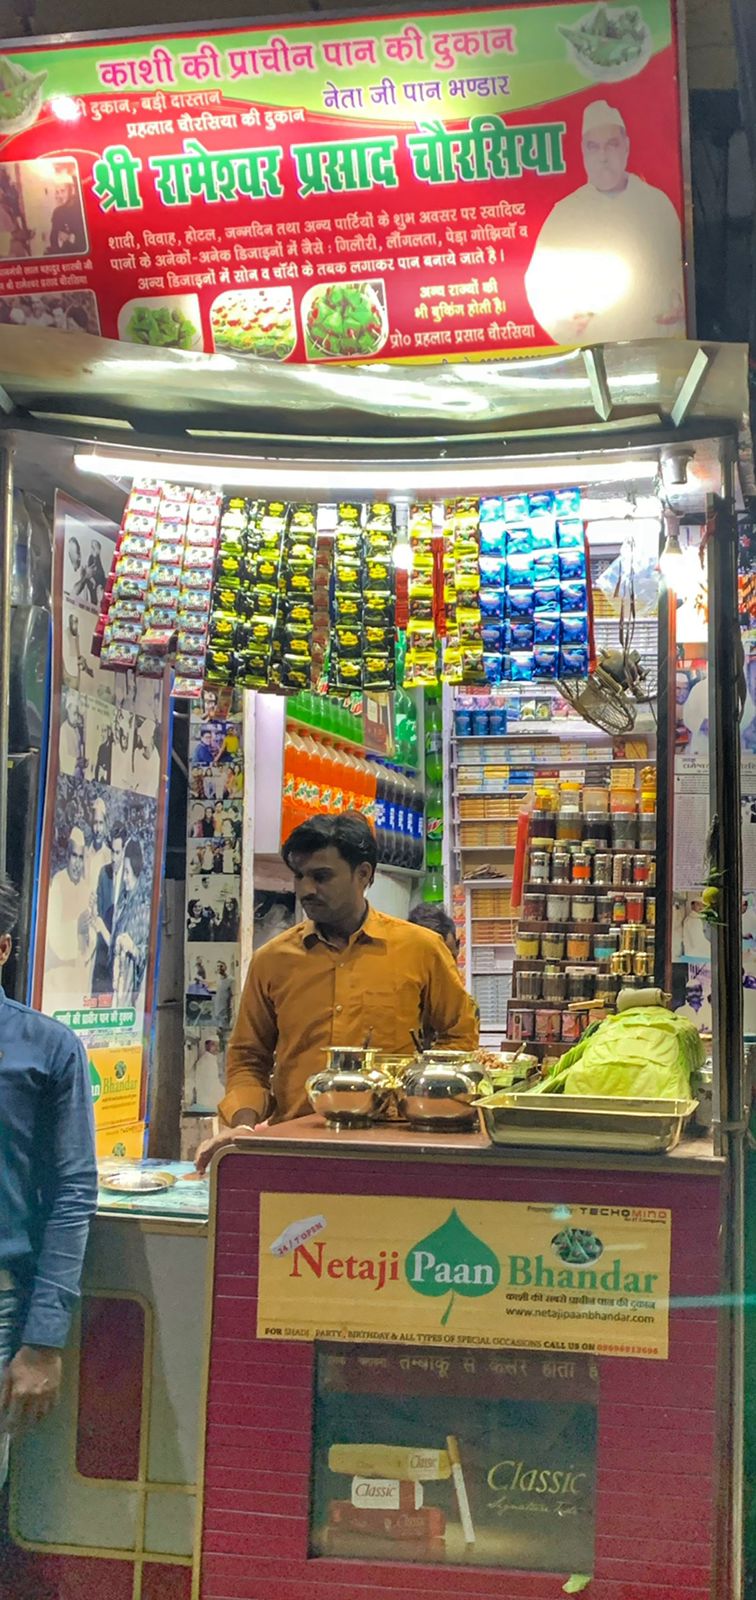 Paan shop in Varanasi